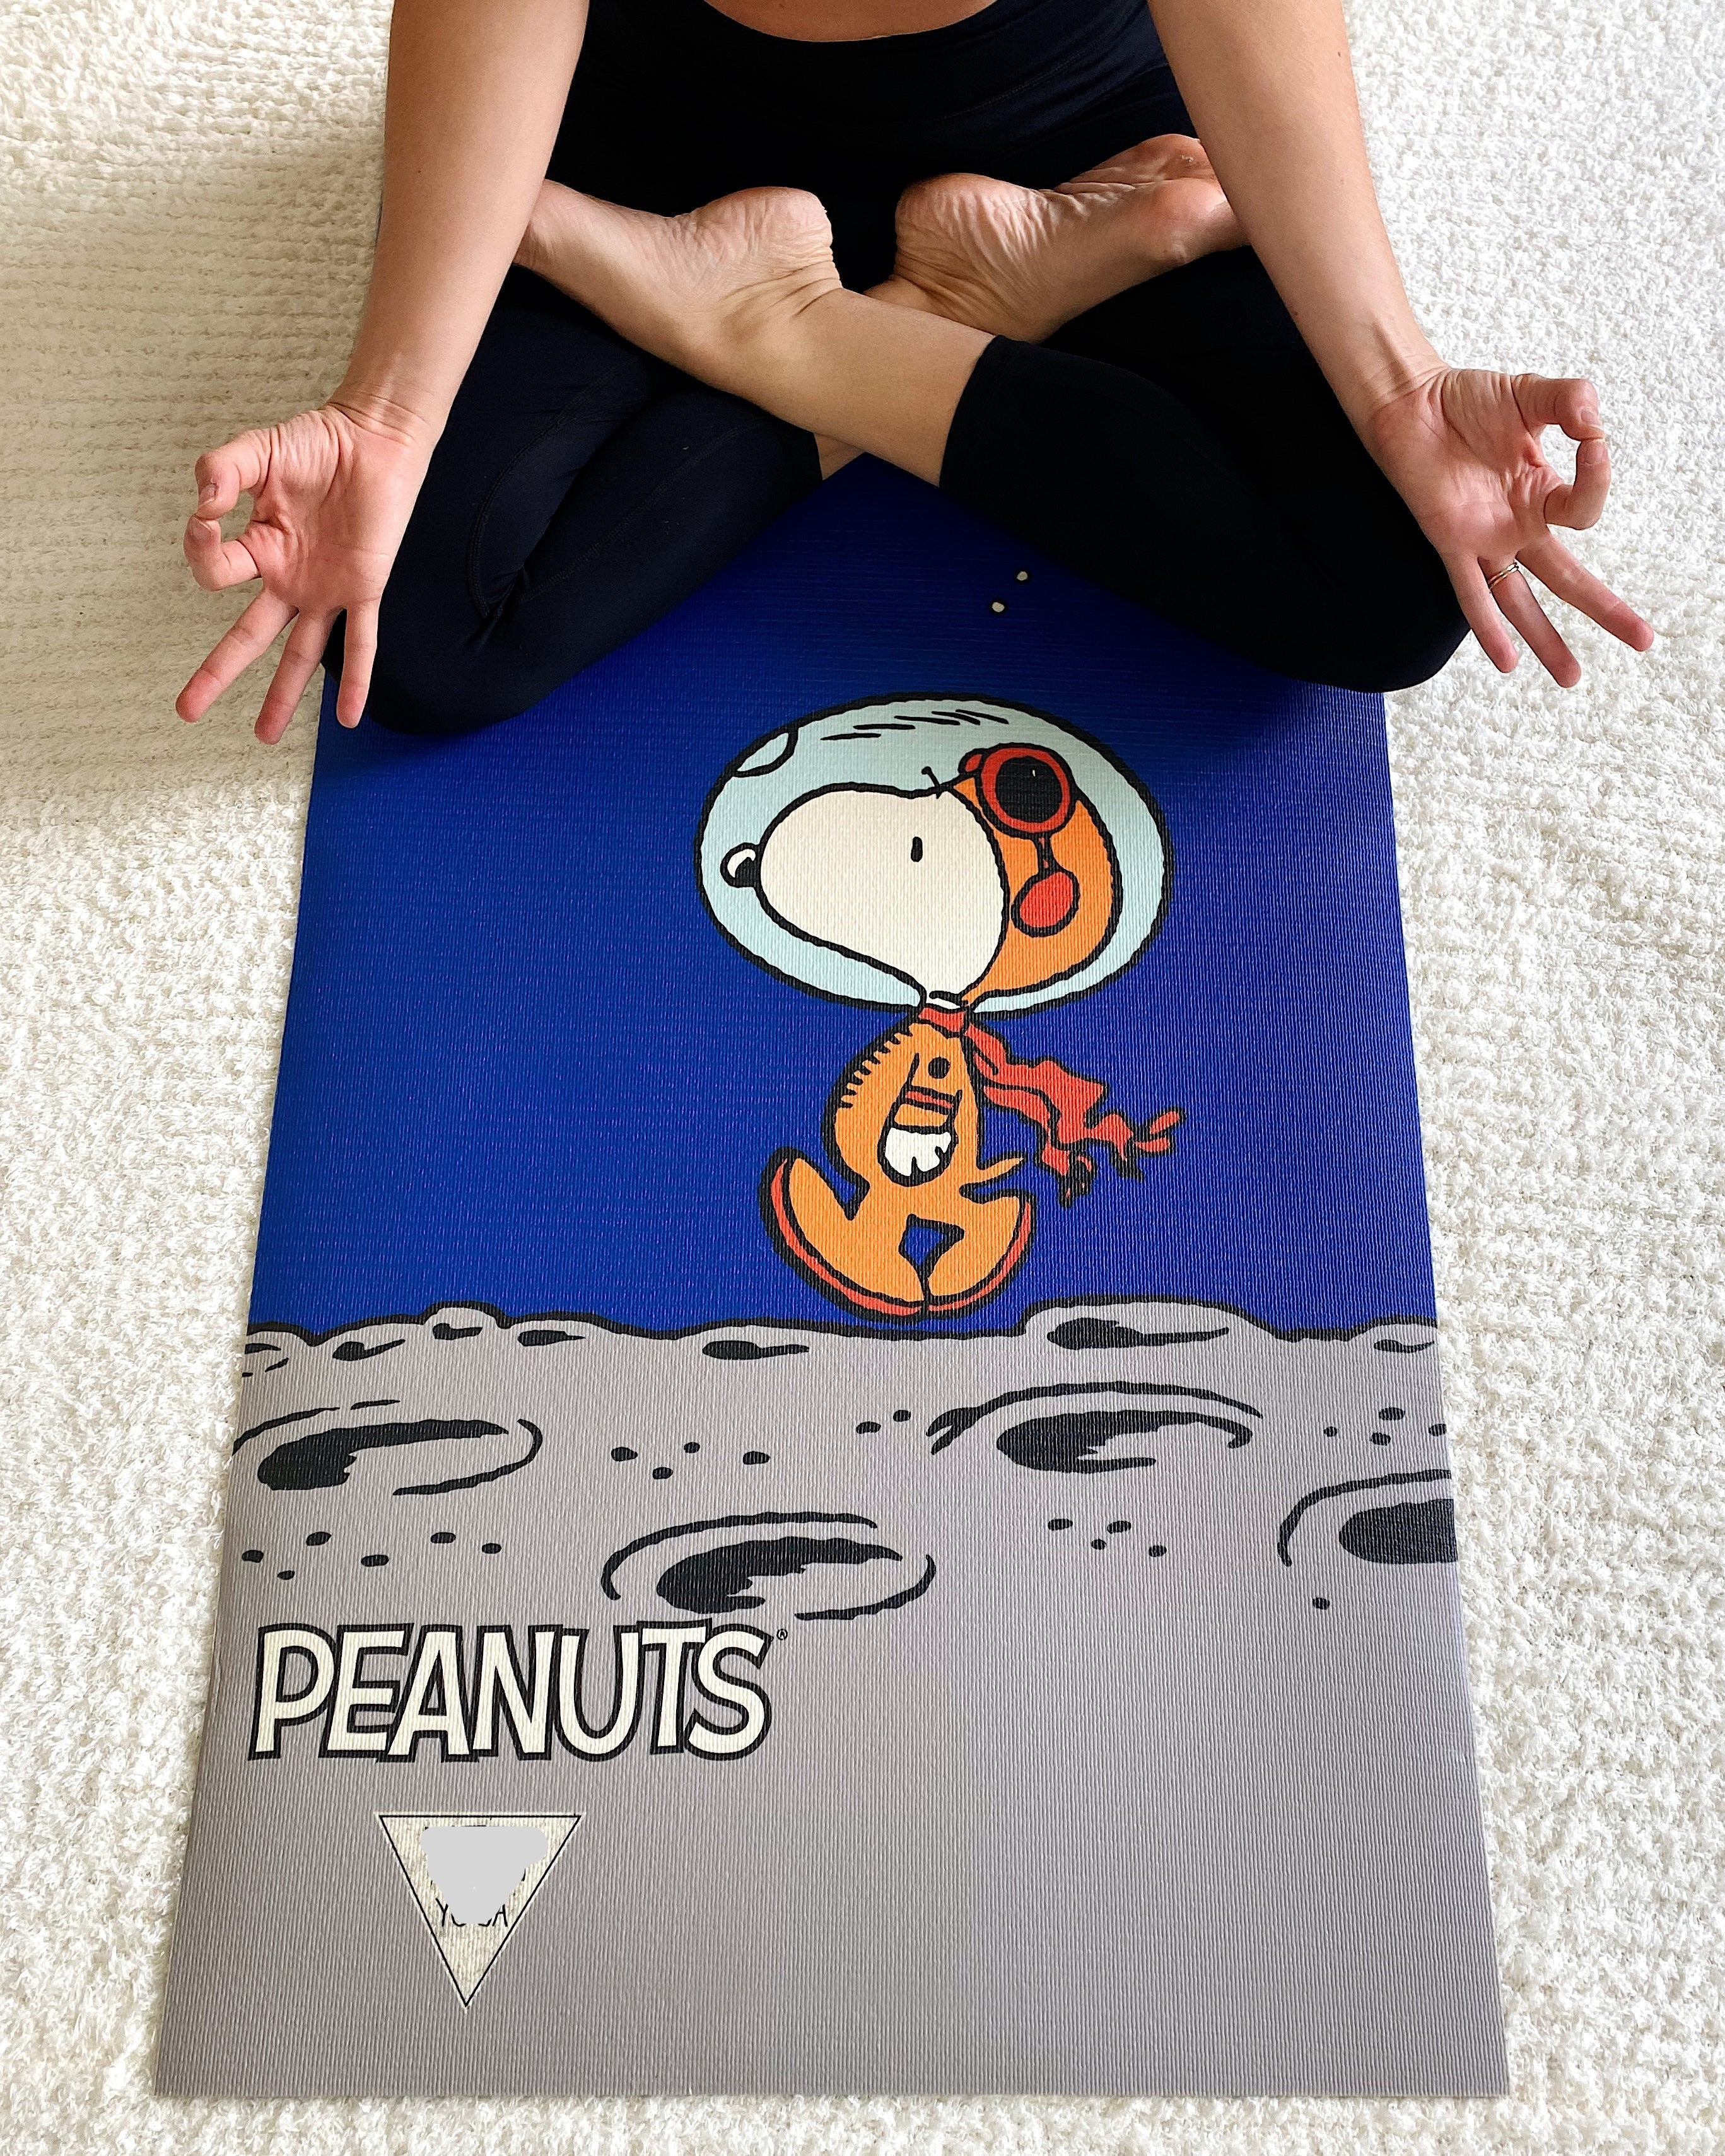 Peanuts Yoga Snoopy Space PER Yoga Mat, Yune Yoga Mats